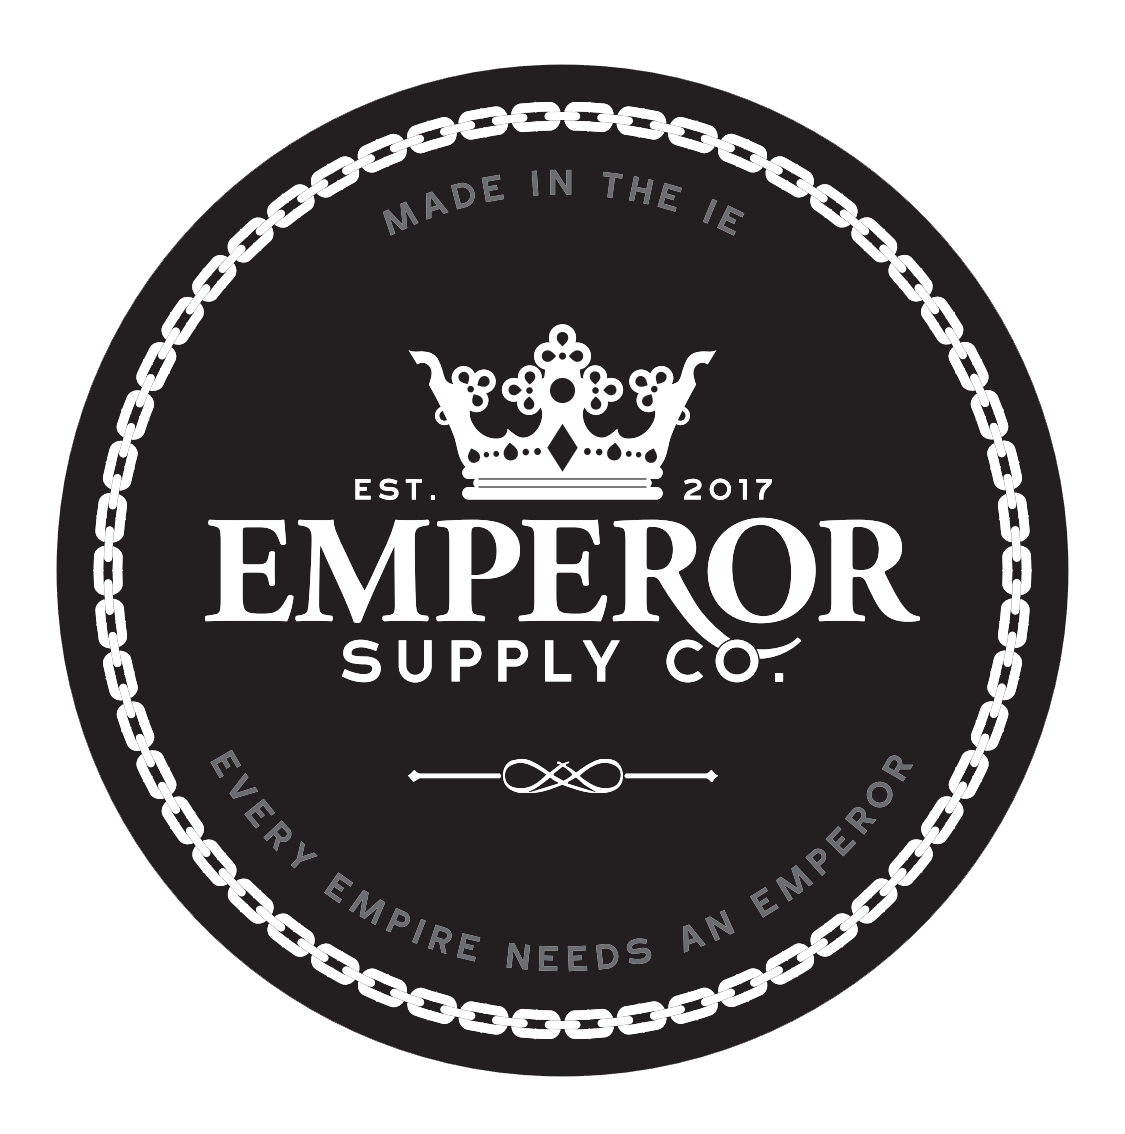 Emperor Supply Co